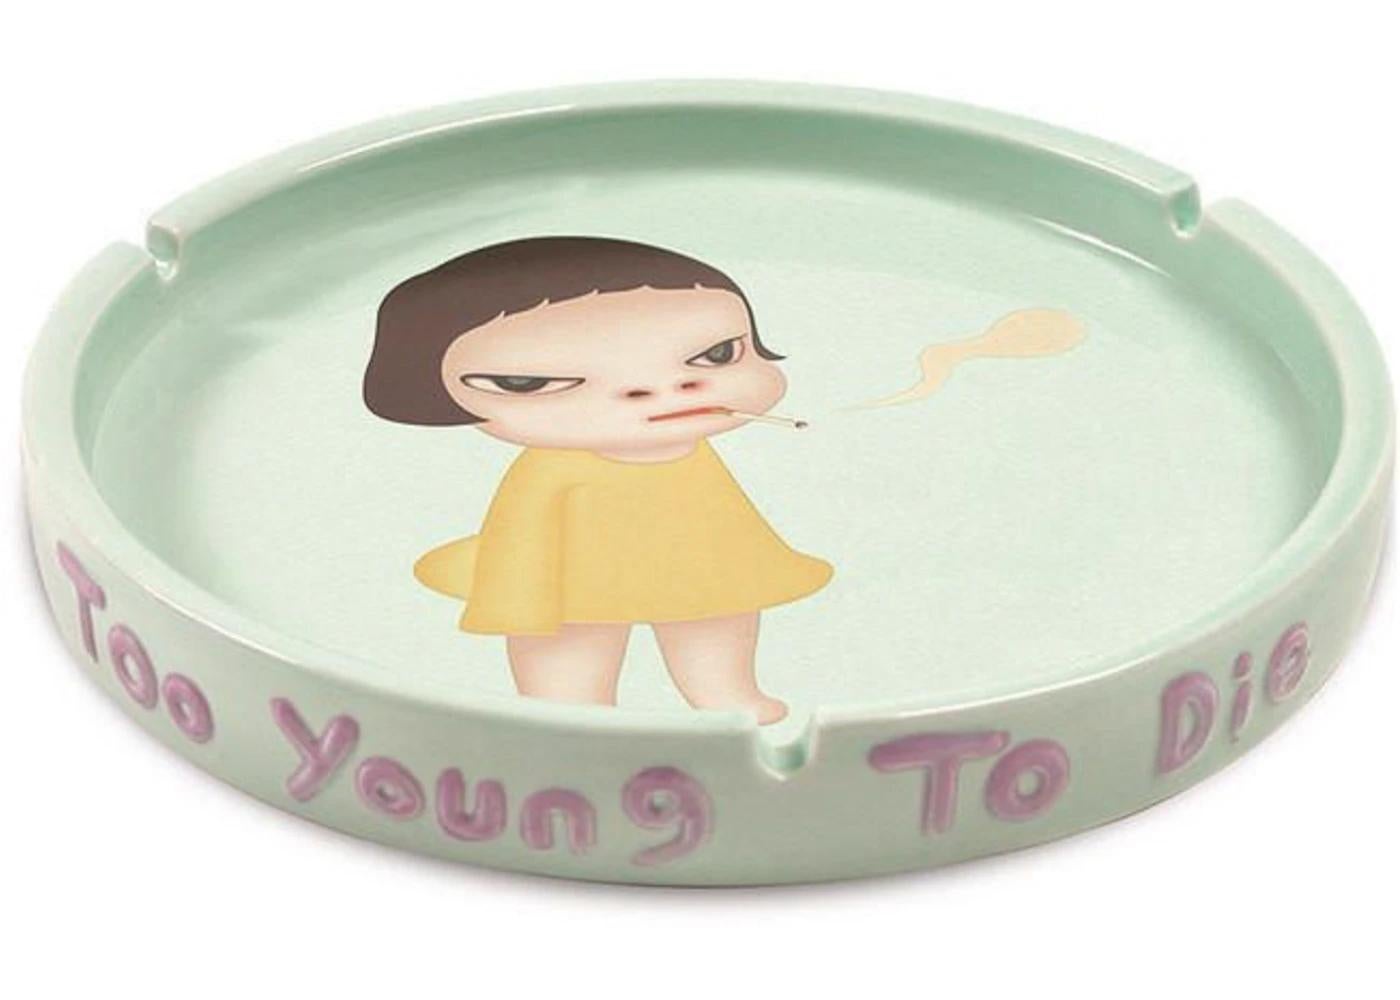 Yoshitomo Nara, Too Young to Die, Glazed Ceramic Ashtray, 2002 For Sale 2